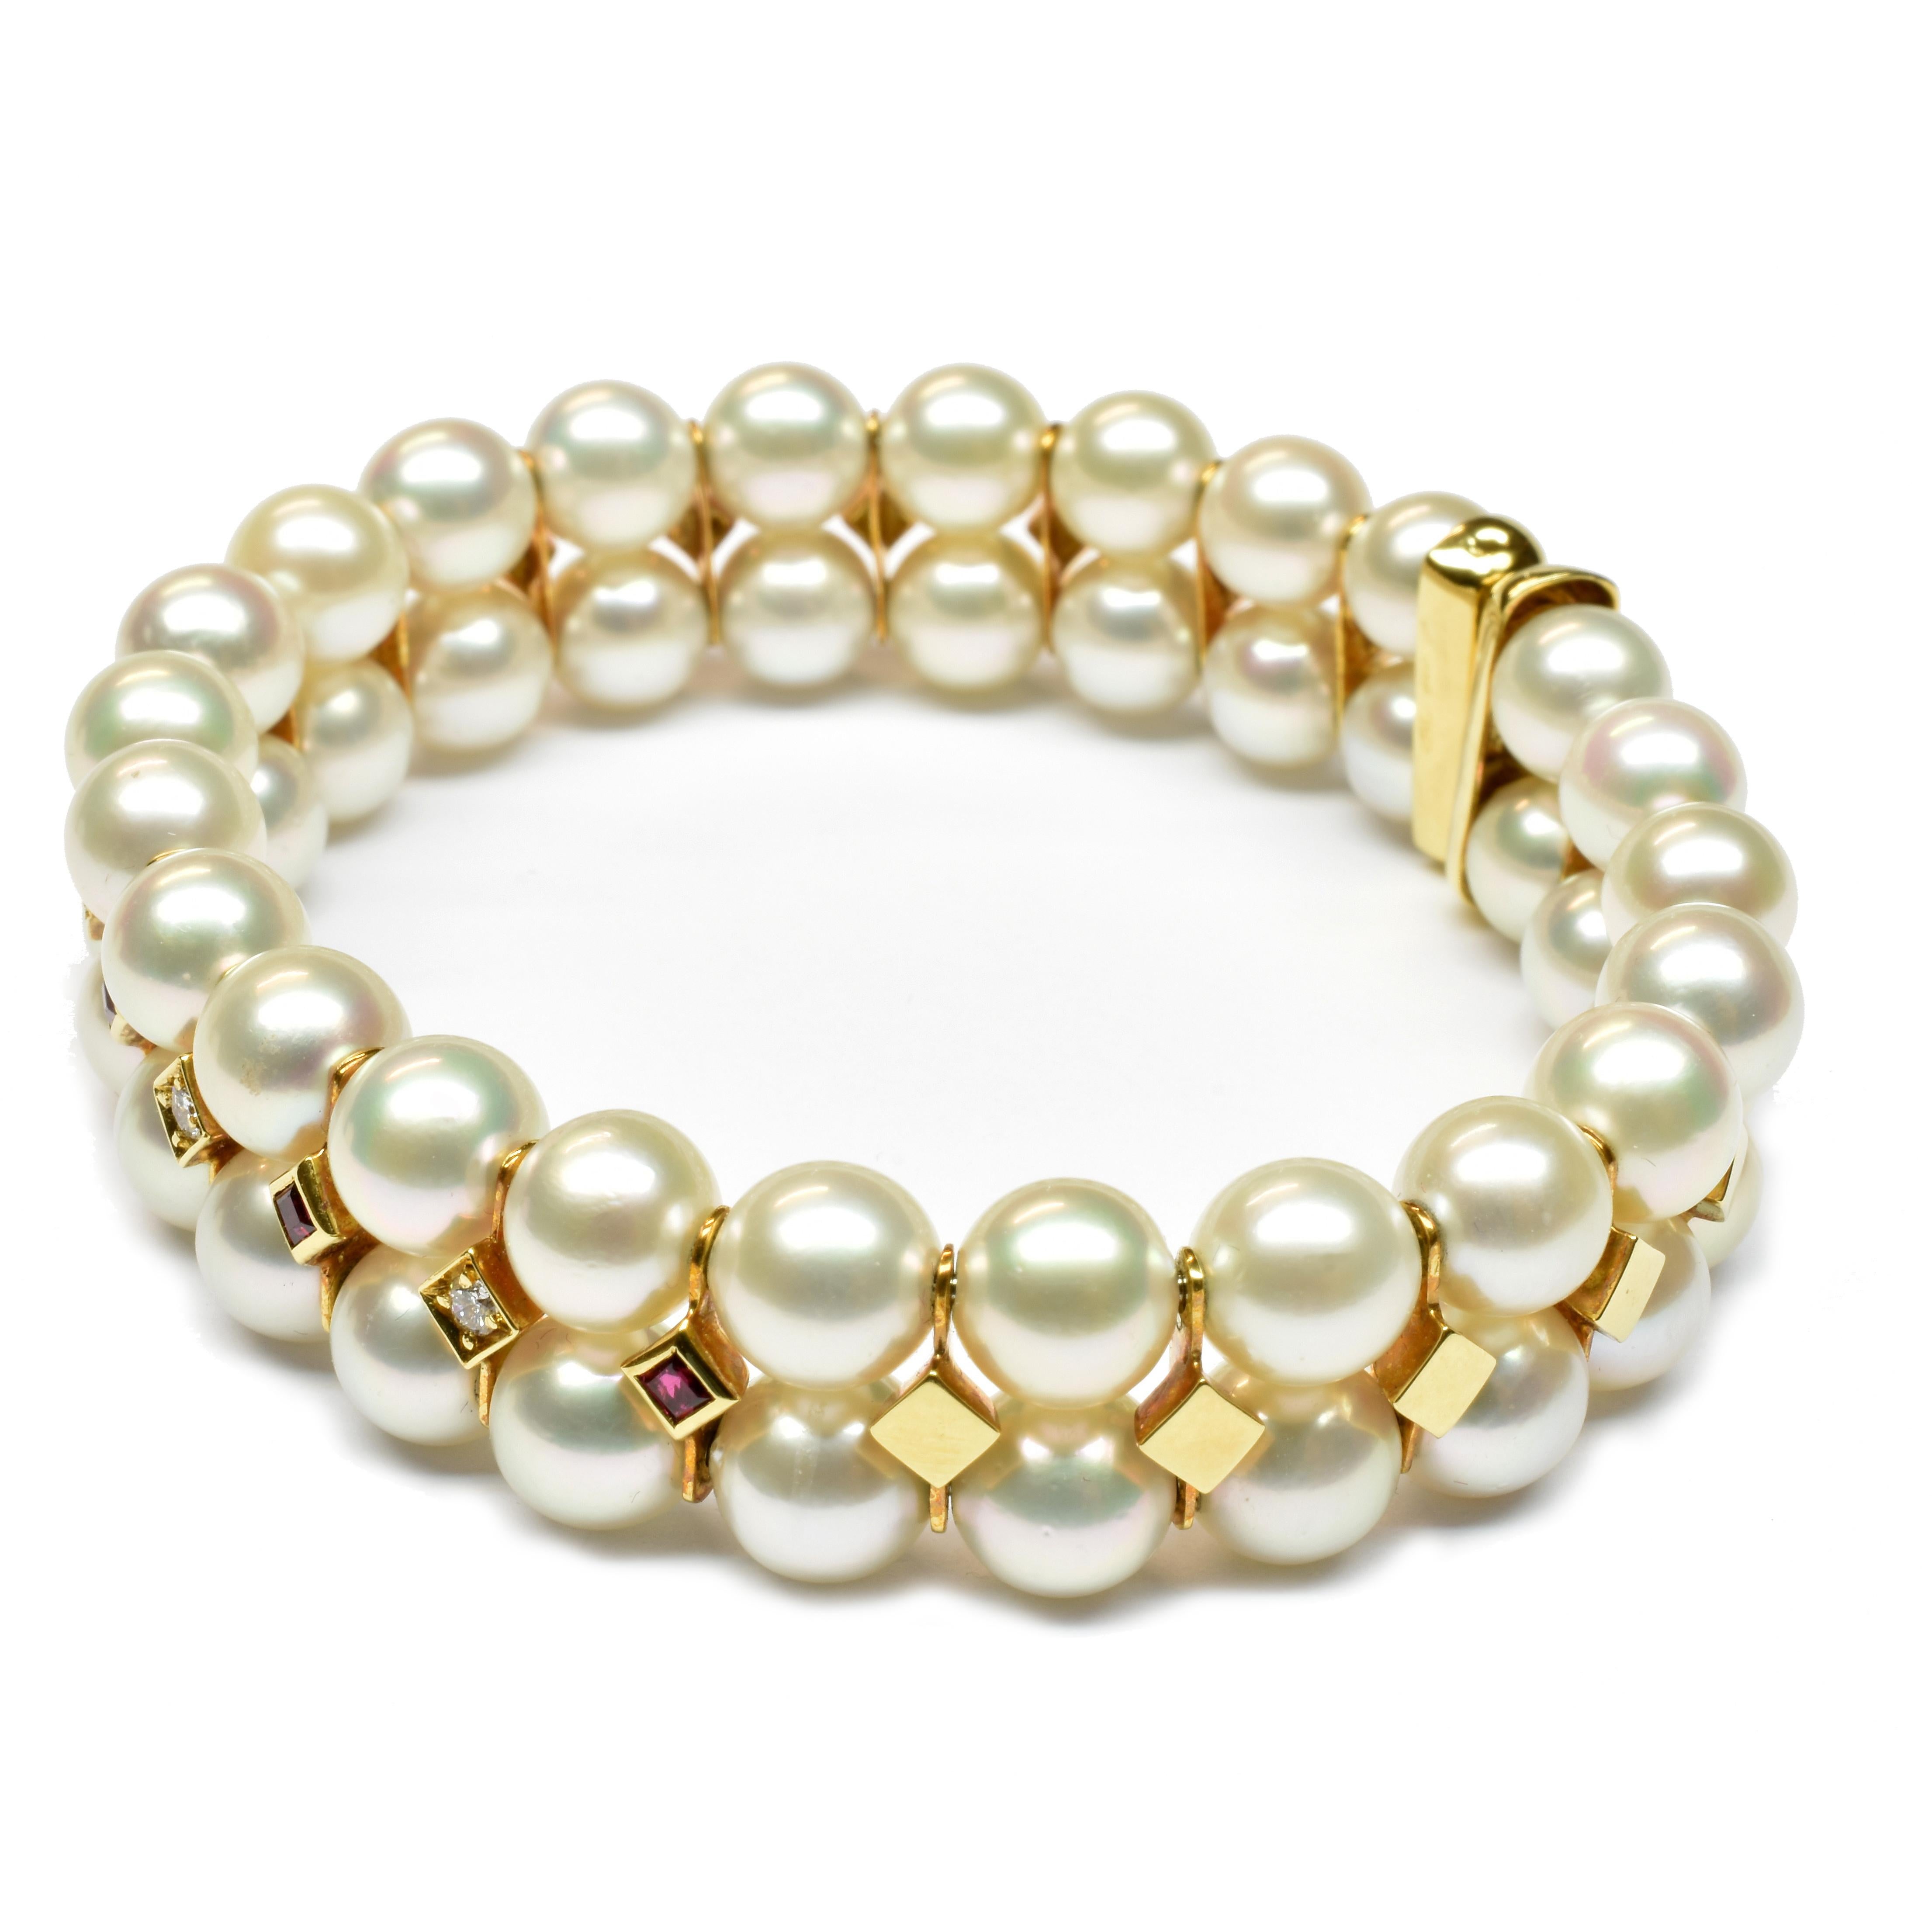 Bracelet souple en or jaune 18Kt Gilberto Cassola avec une double rangée de perles de culture japonaises naturelles (Akoya) de 7 mm. 
Perles de qualité supérieure avec un haut degré de rondeur et de couleur. Rubis taillés en carrè et diamants ronds